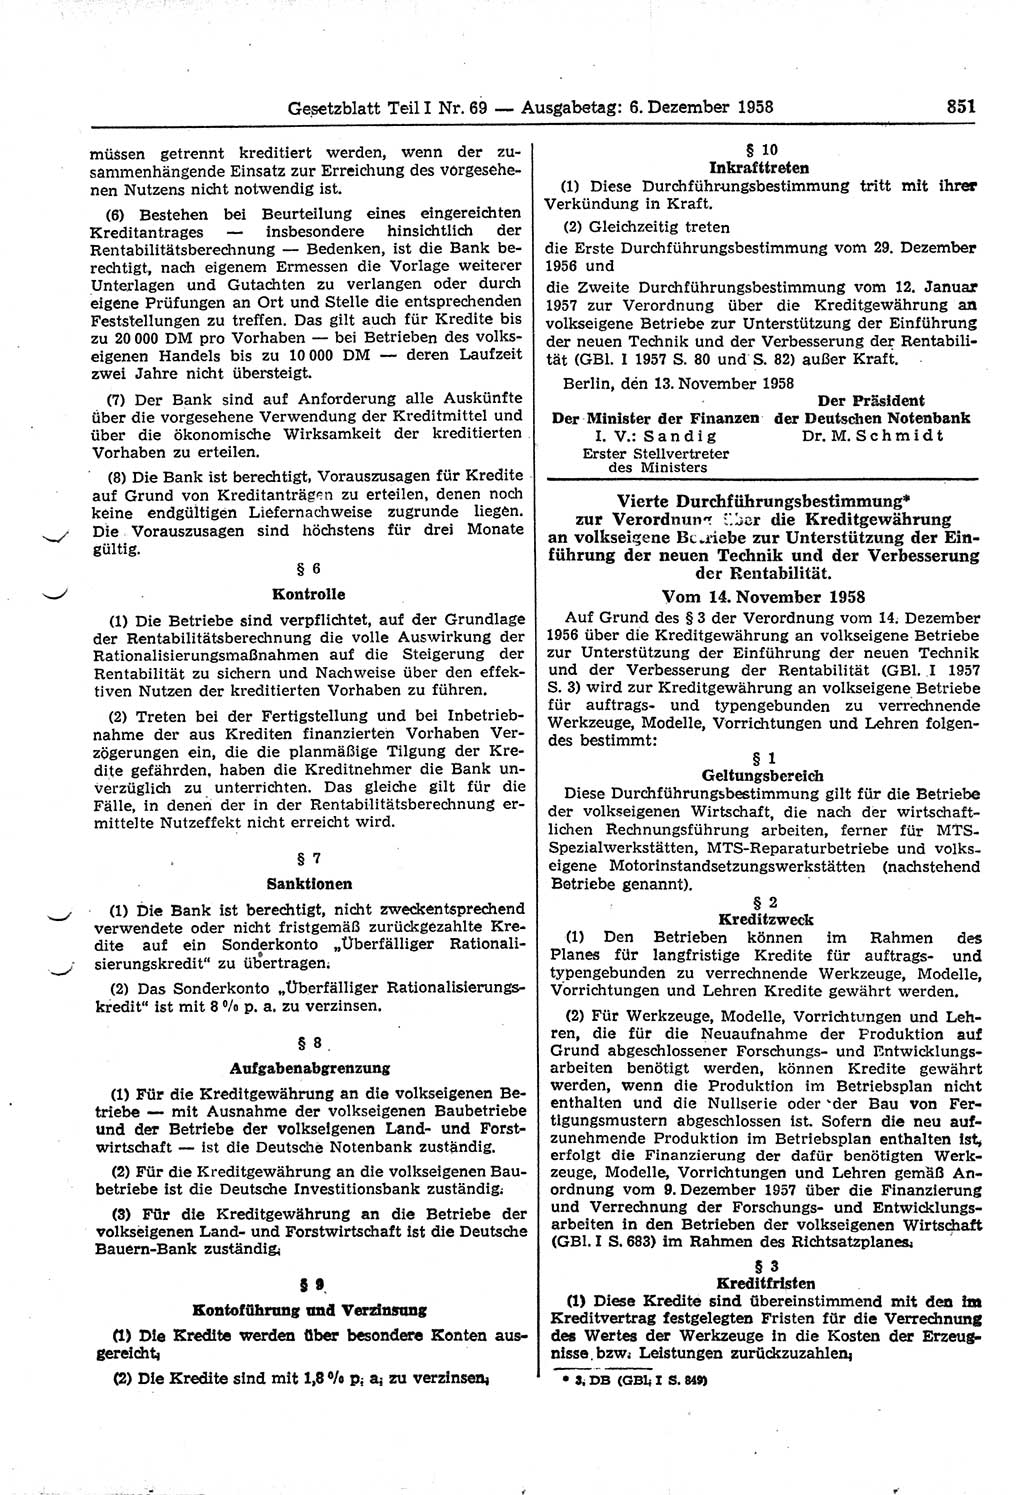 Gesetzblatt (GBl.) der Deutschen Demokratischen Republik (DDR) Teil Ⅰ 1958, Seite 851 (GBl. DDR Ⅰ 1958, S. 851)